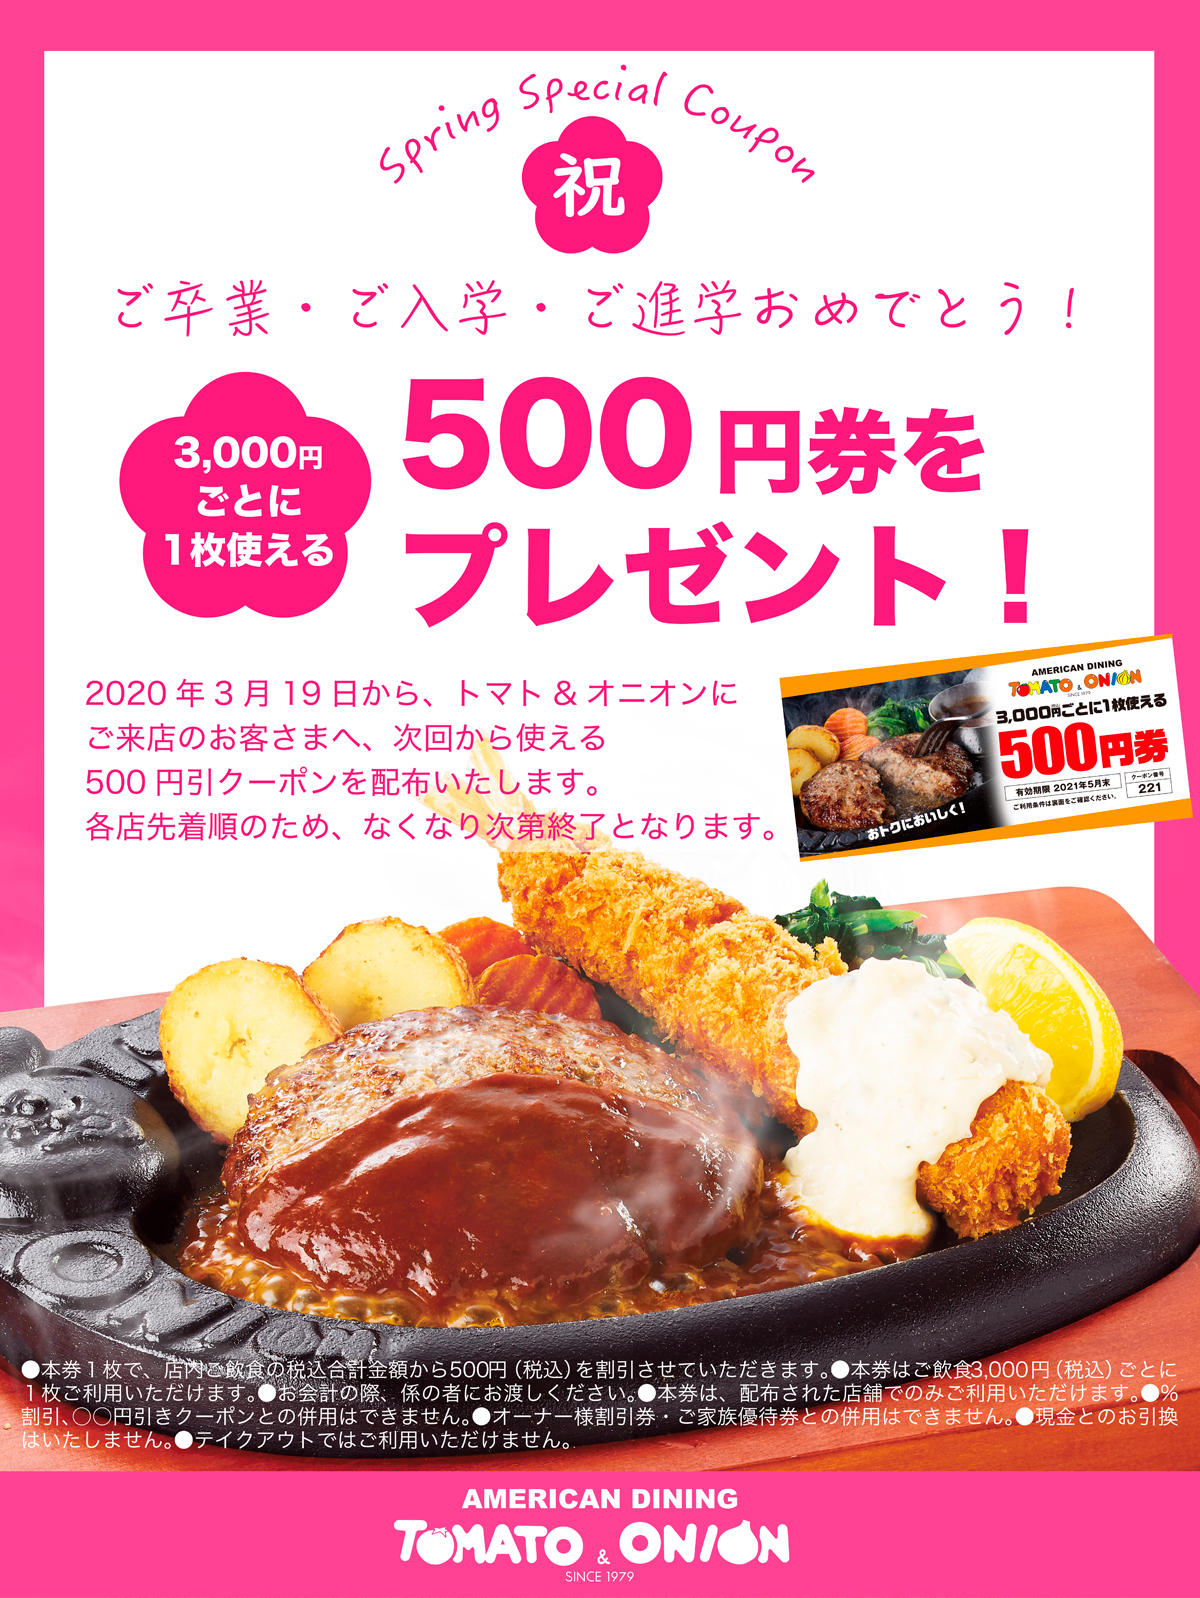 3月19日よりご来店頂いたお客様に次回ご利用いただける500円割引チケットのプレゼントを実施致します。<br>トマオニでおトクにおいしくお食事をお楽しみくださいませ♪